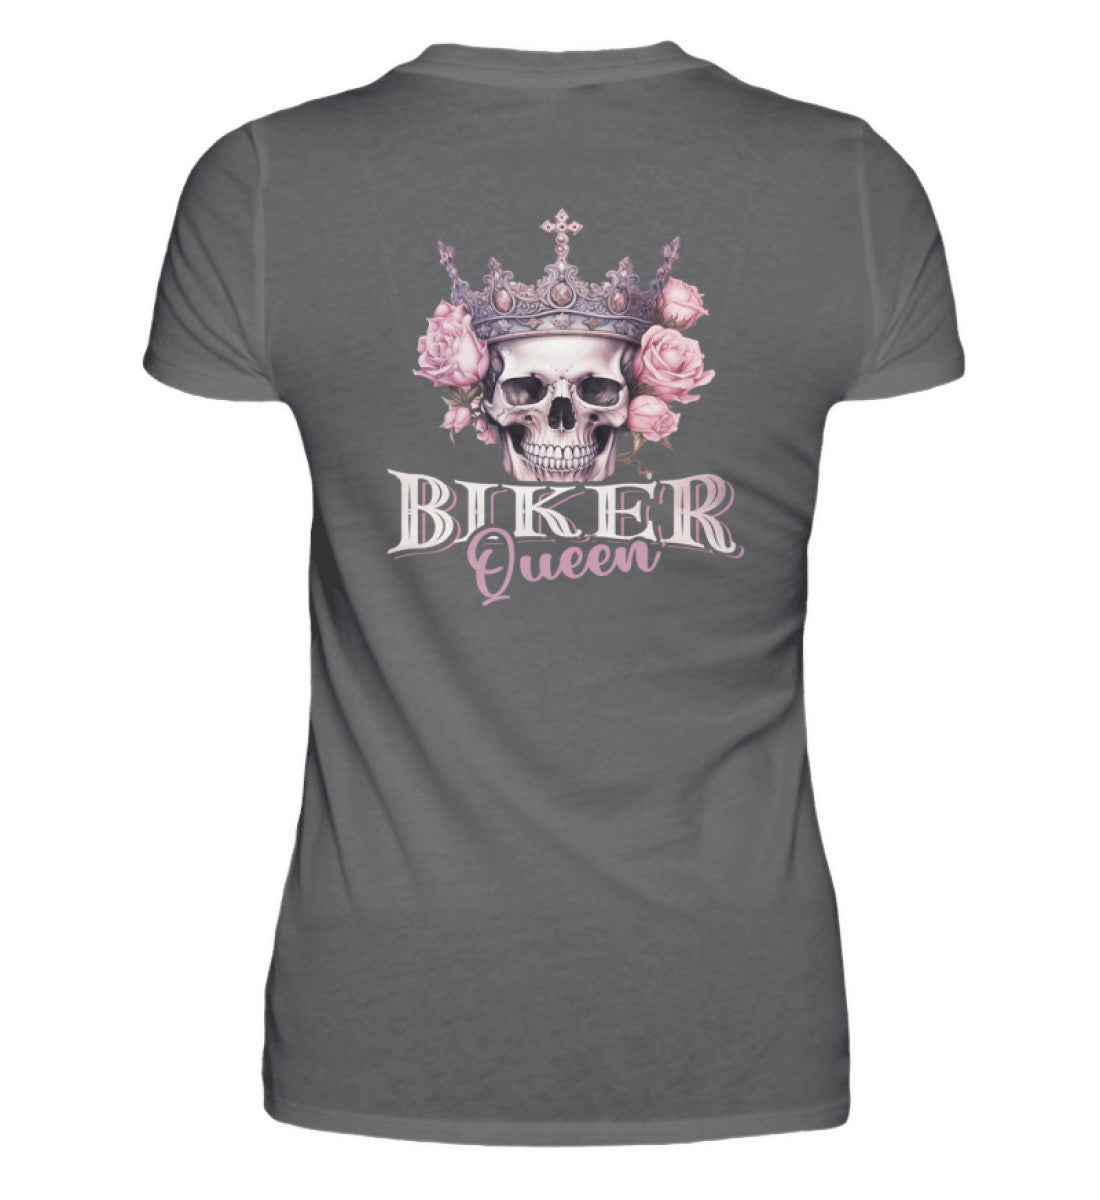 Ein Bikerin T-Shirt für Motorradfahrerinnen von Wingbikers mit dem Aufdruck, Biker Queen - als Back Print, in dunkelgrau.